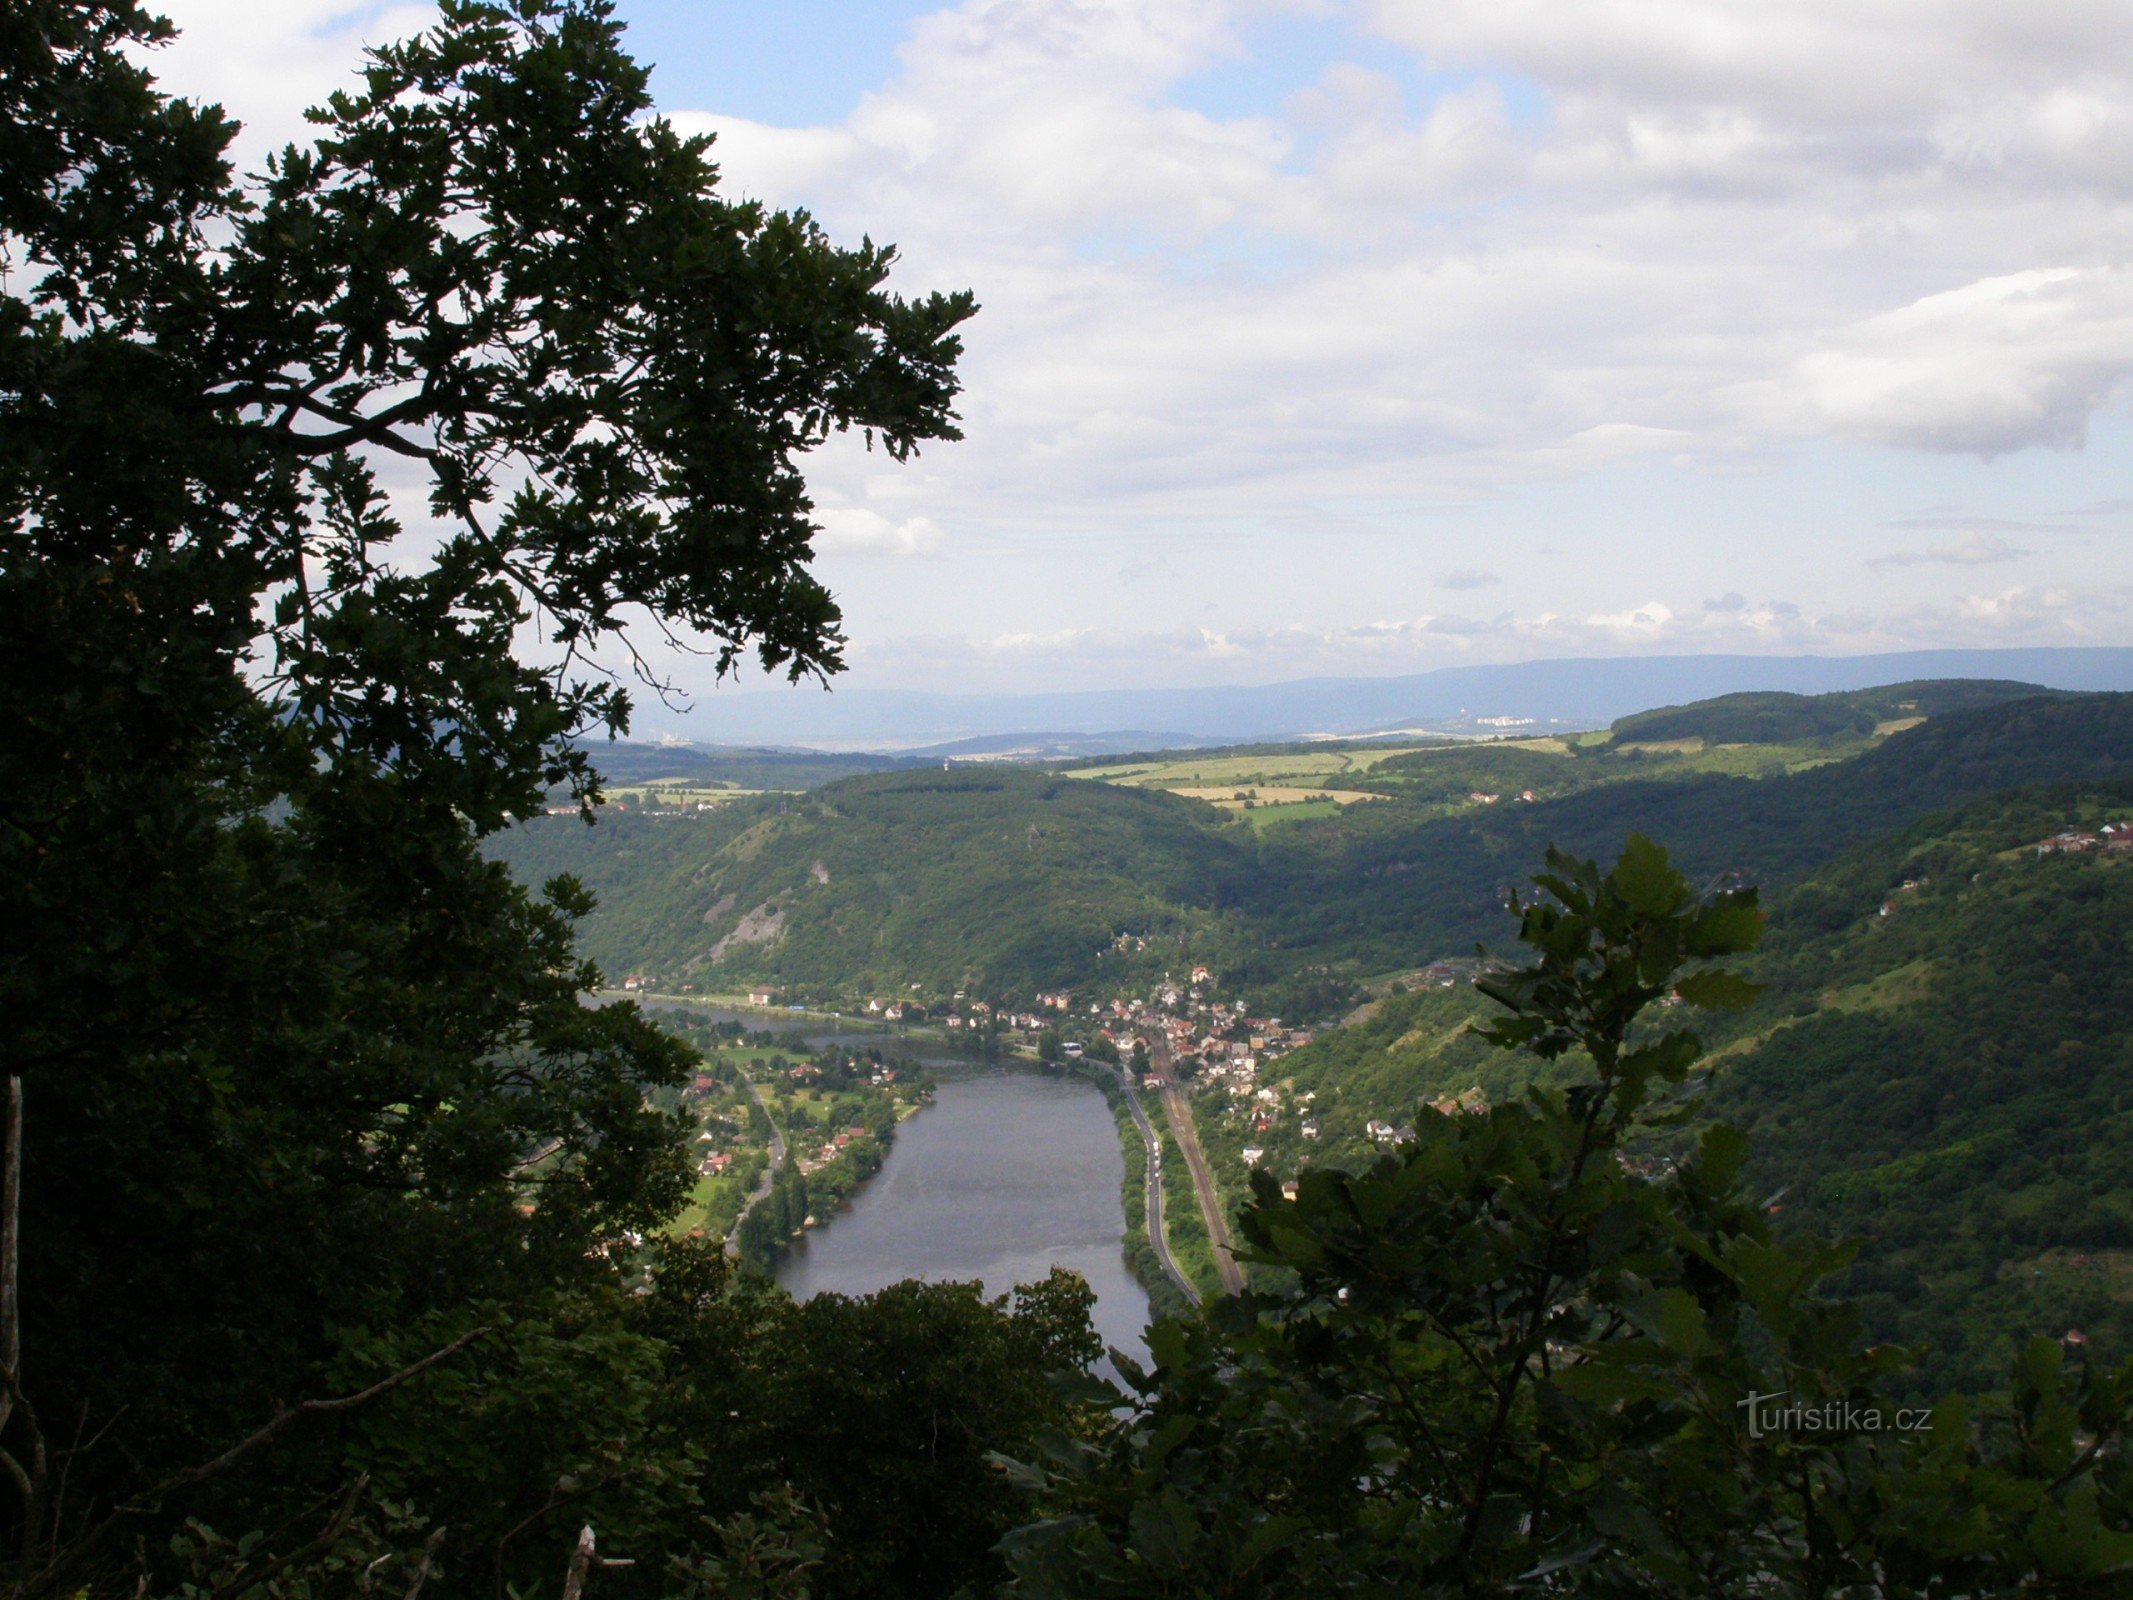 攀登 Varhošť 时欣赏易北河谷的景色